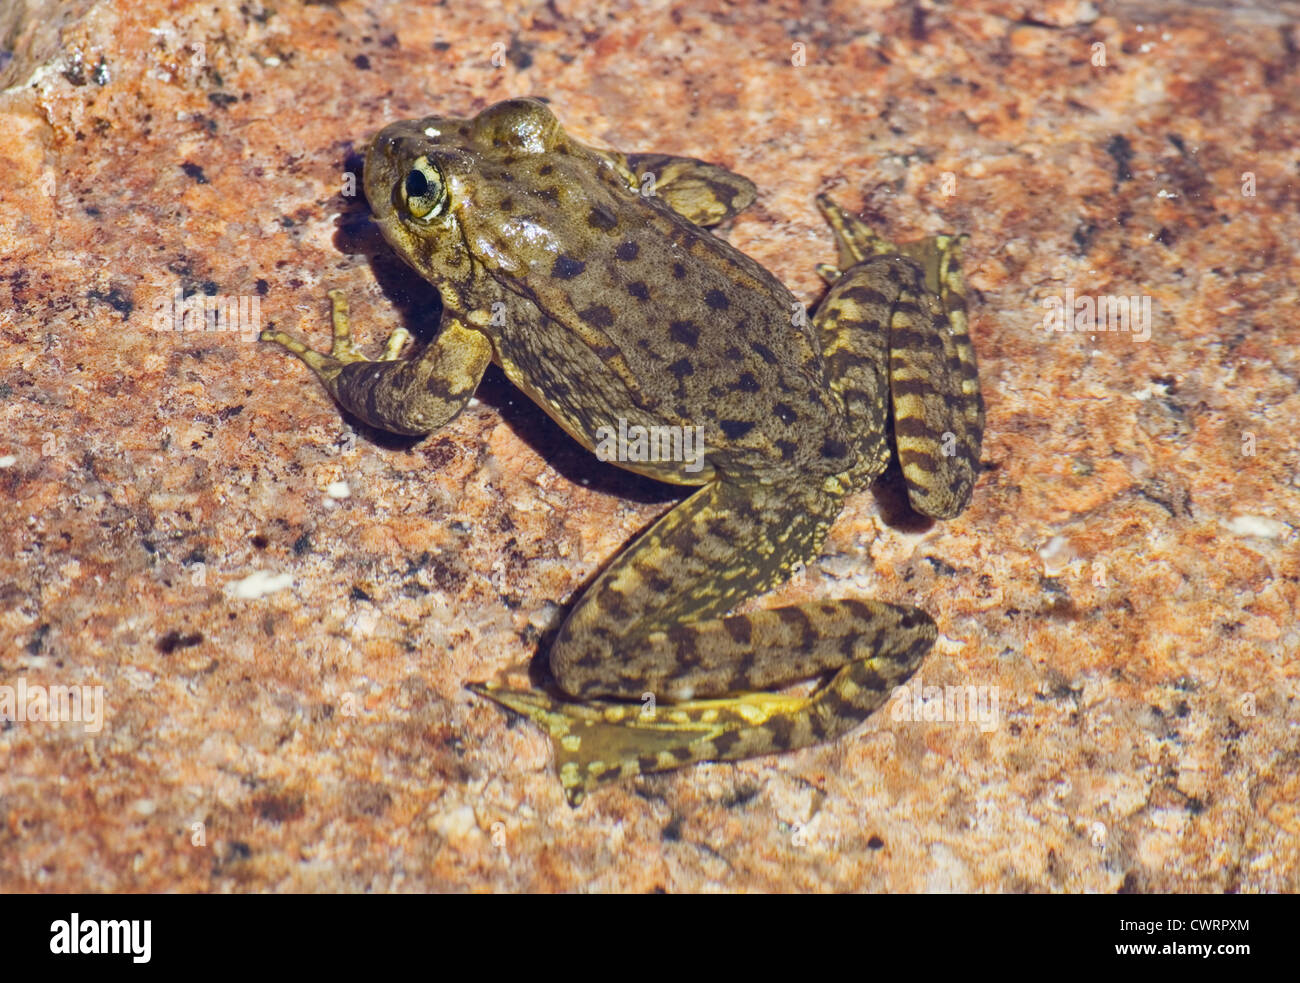 Sierra Nevada yellow-legged frog Rana sierrae ou sur une roche de granit dans l'eau Banque D'Images